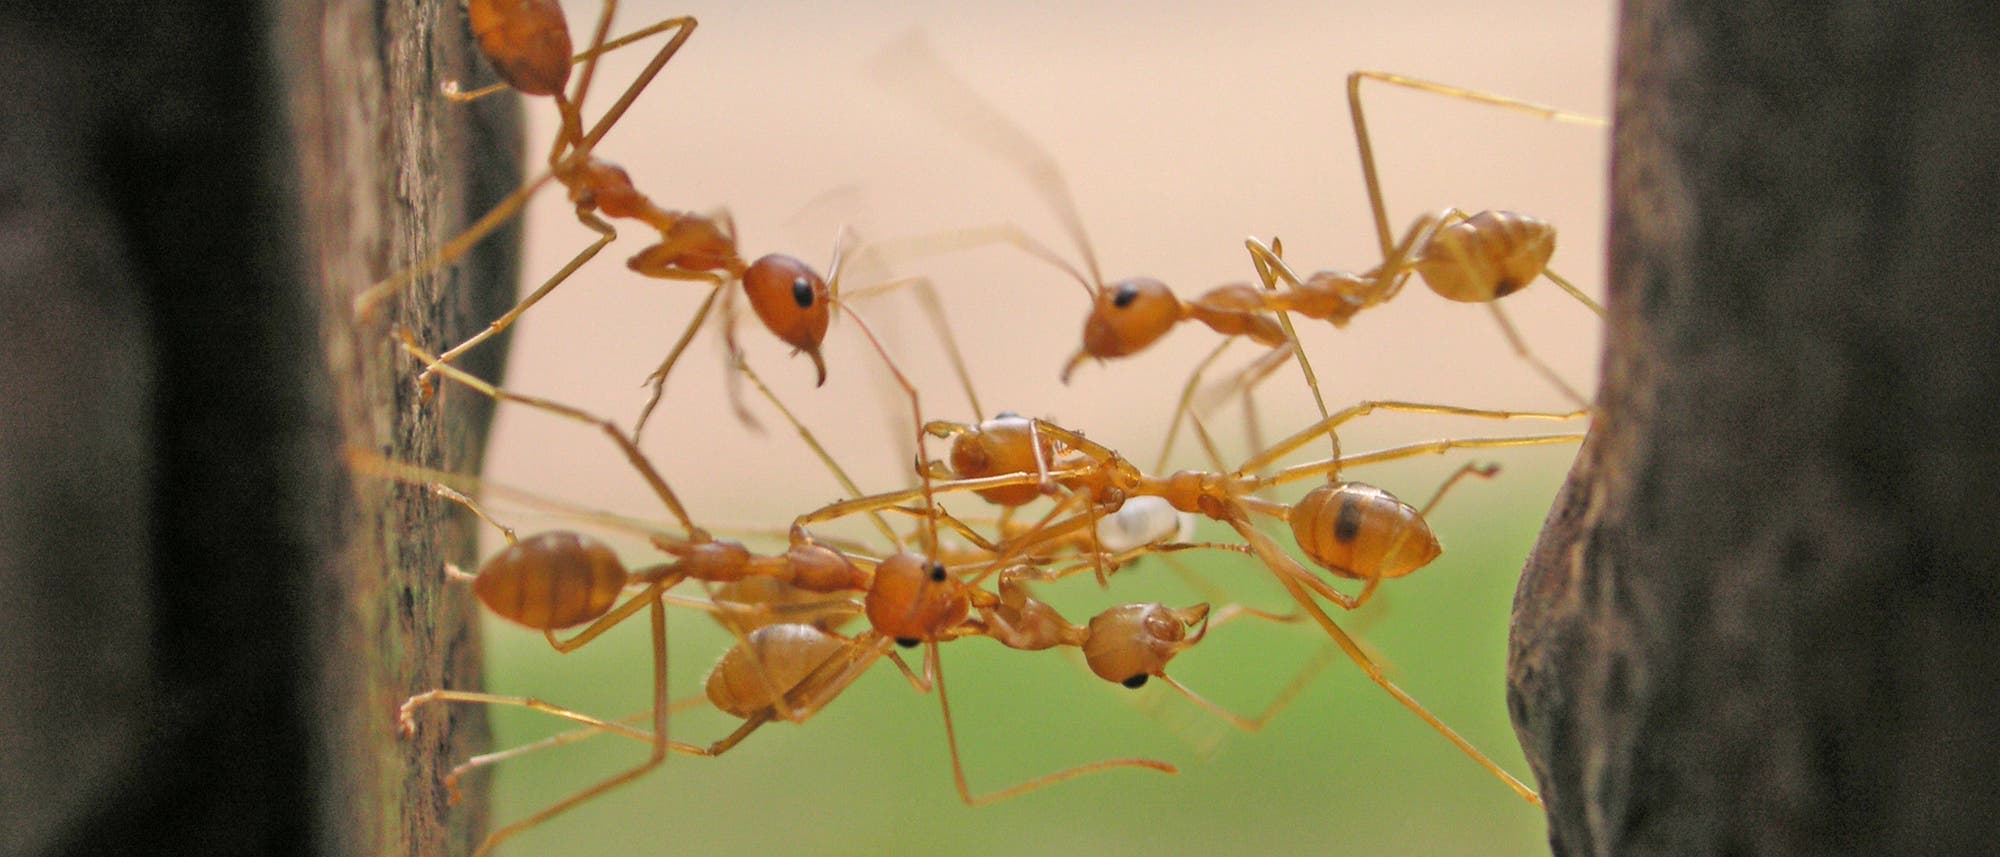 Ameisen gehören zu den emsigsten Resteverwertern.